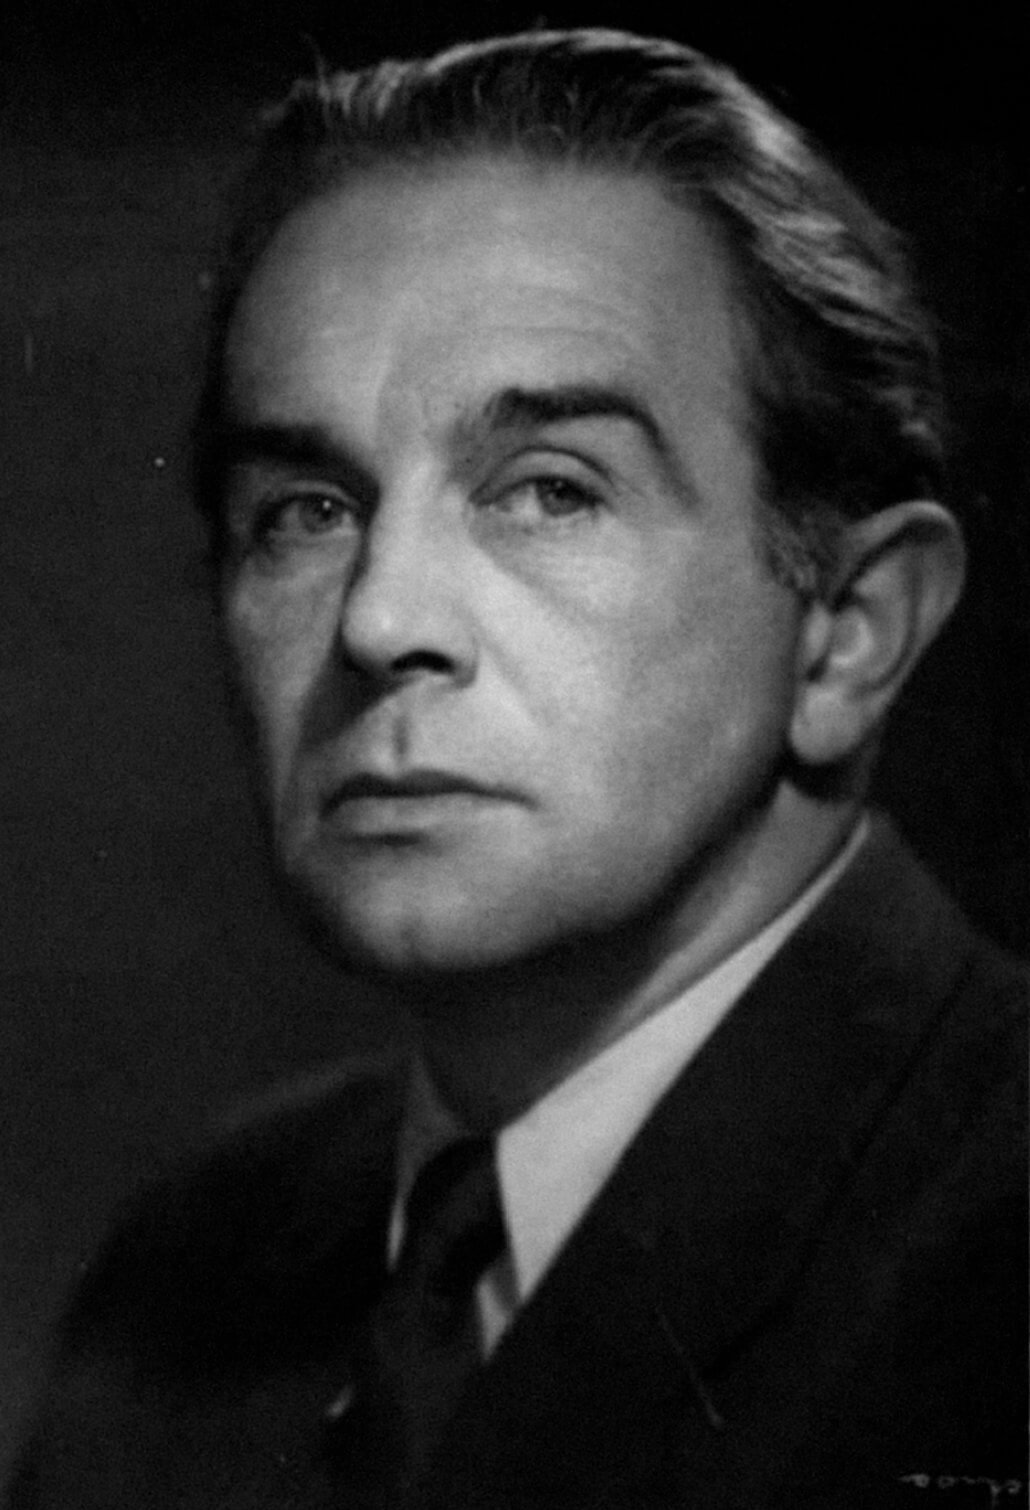 Konstanty Ildefons Gałczyński (1905 – 1953)